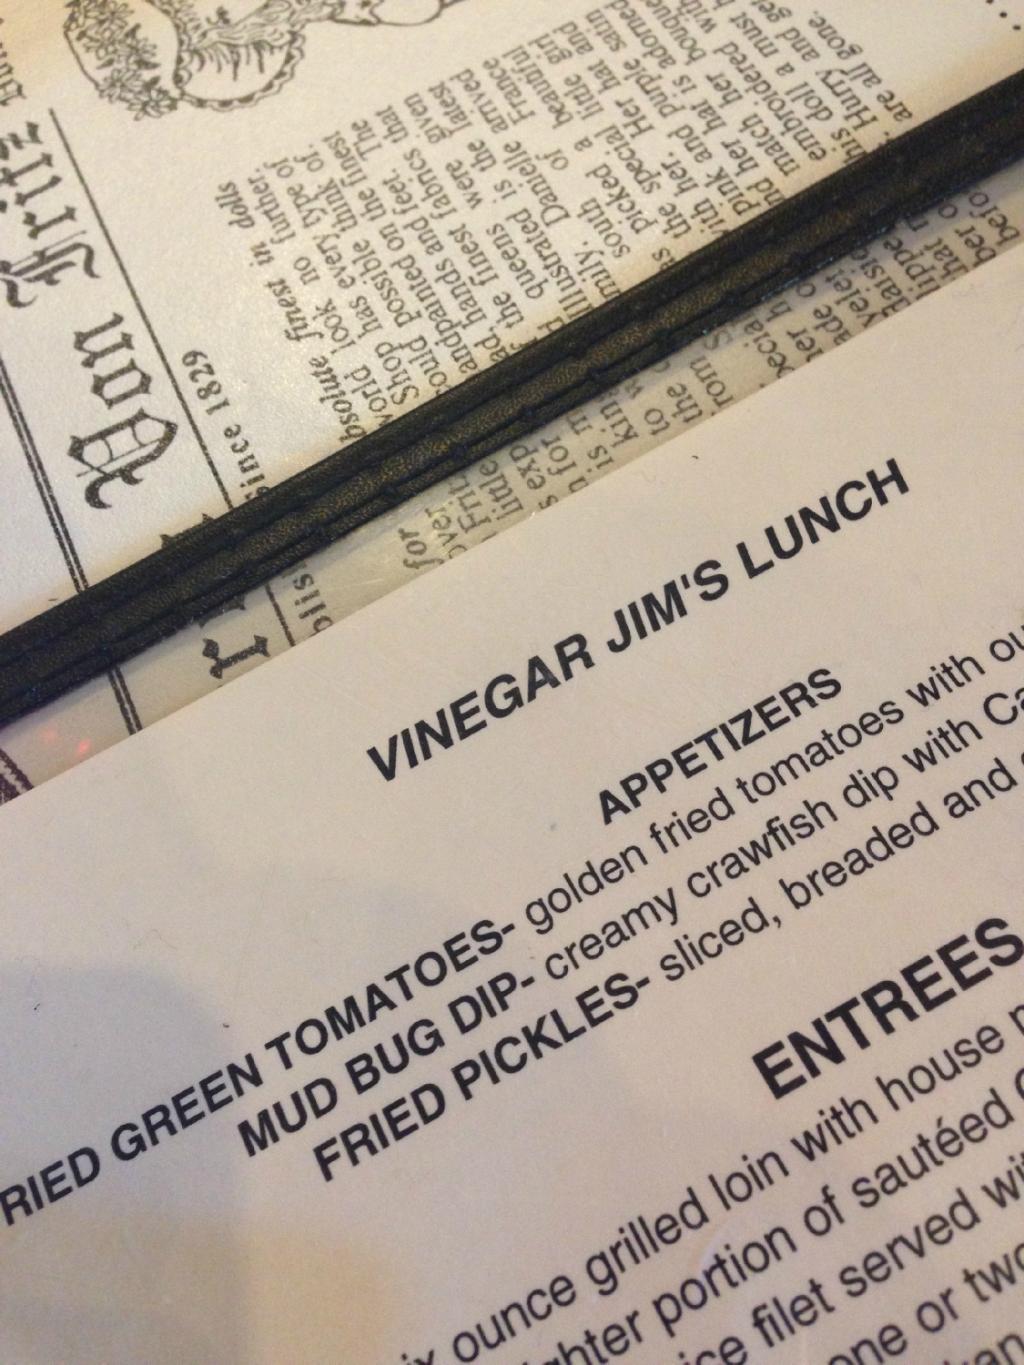 Vinegar Jim`s